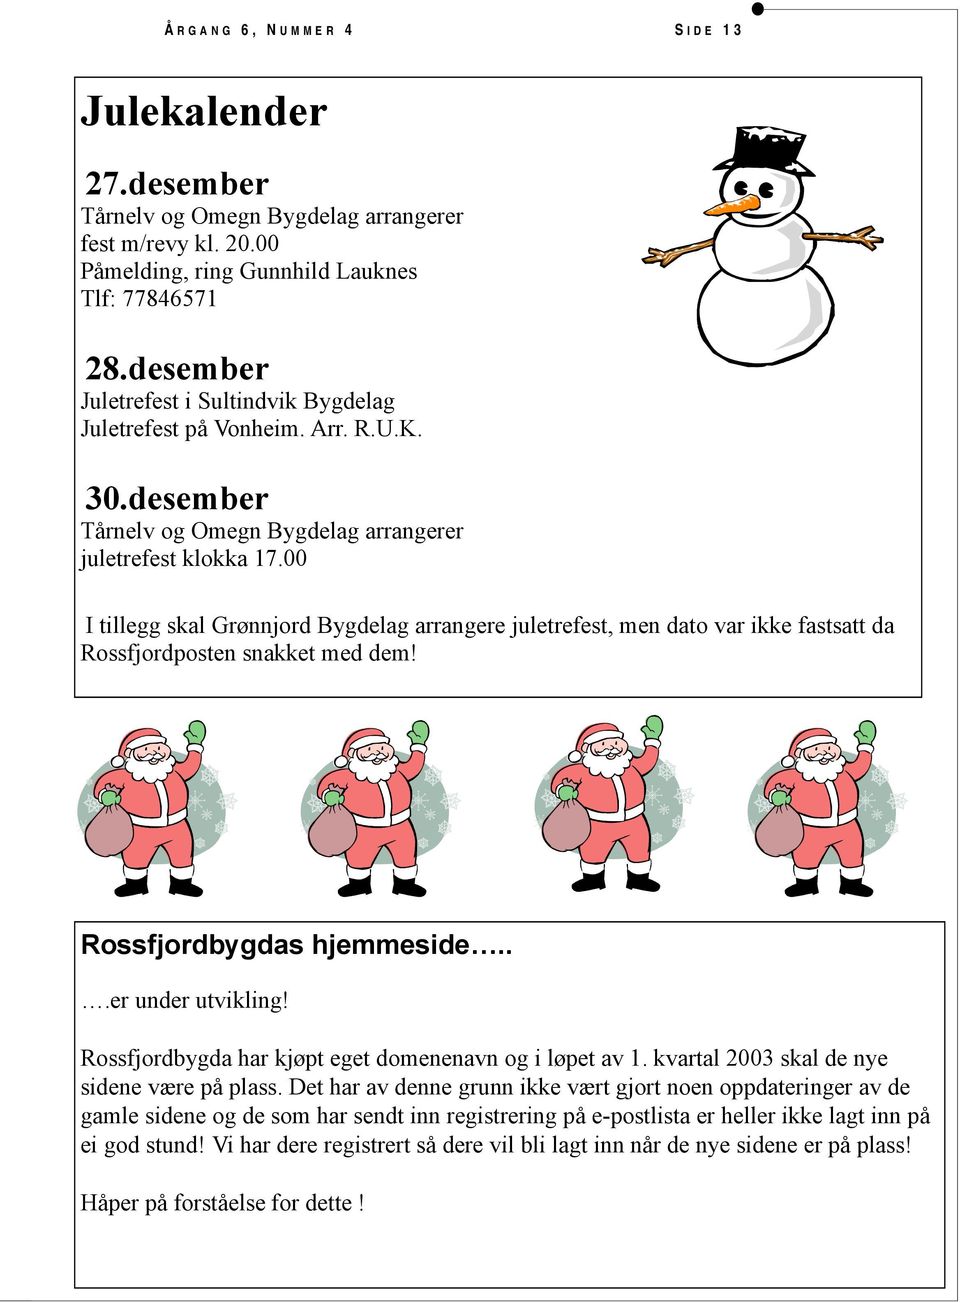 00 I tillegg skal Grønnjord Bygdelag arrangere juletrefest, men dato var ikke fastsatt da Rossfjordposten snakket med dem! Rossfjordbygdas hjemmeside...er under utvikling!